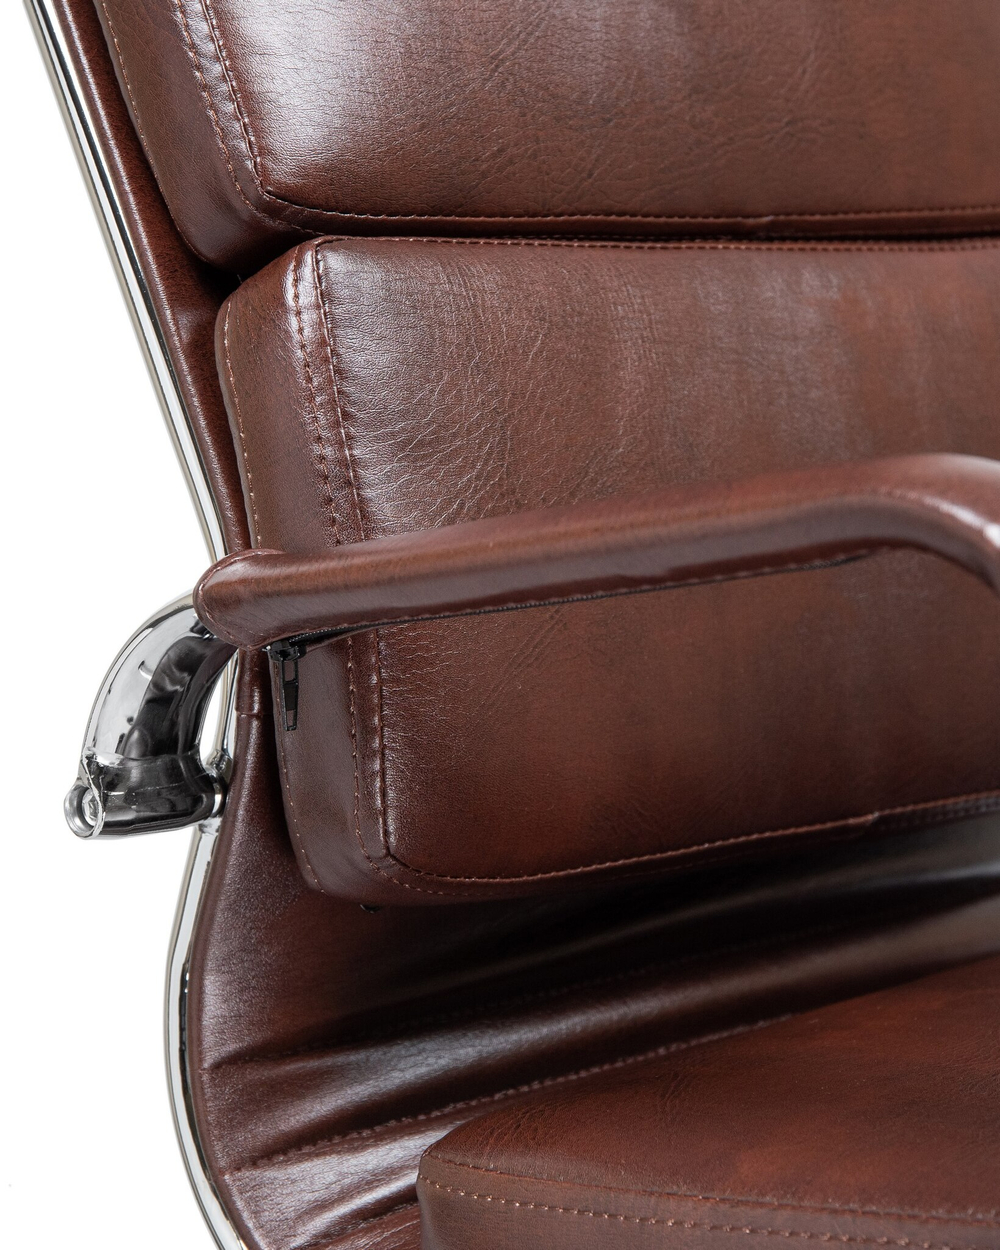 Офисное кресло для руководителей  ARNOLD (коричневый)